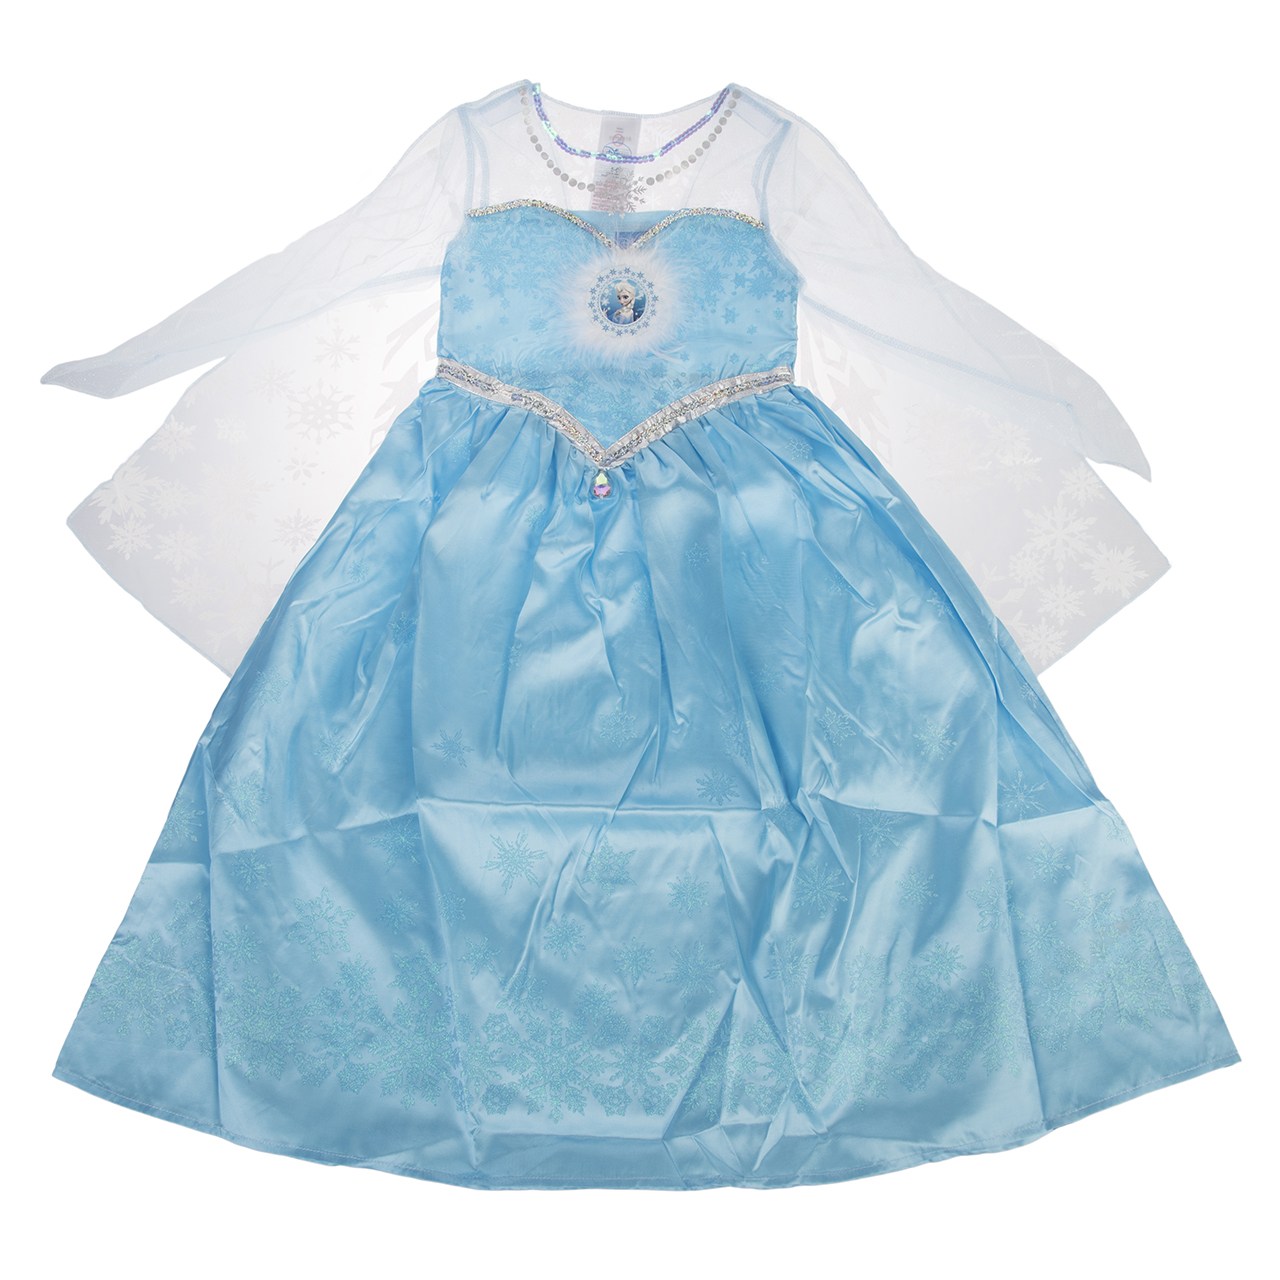 تن پوش مدل Dis Frozen Elsa Deluxe Dress سایز L